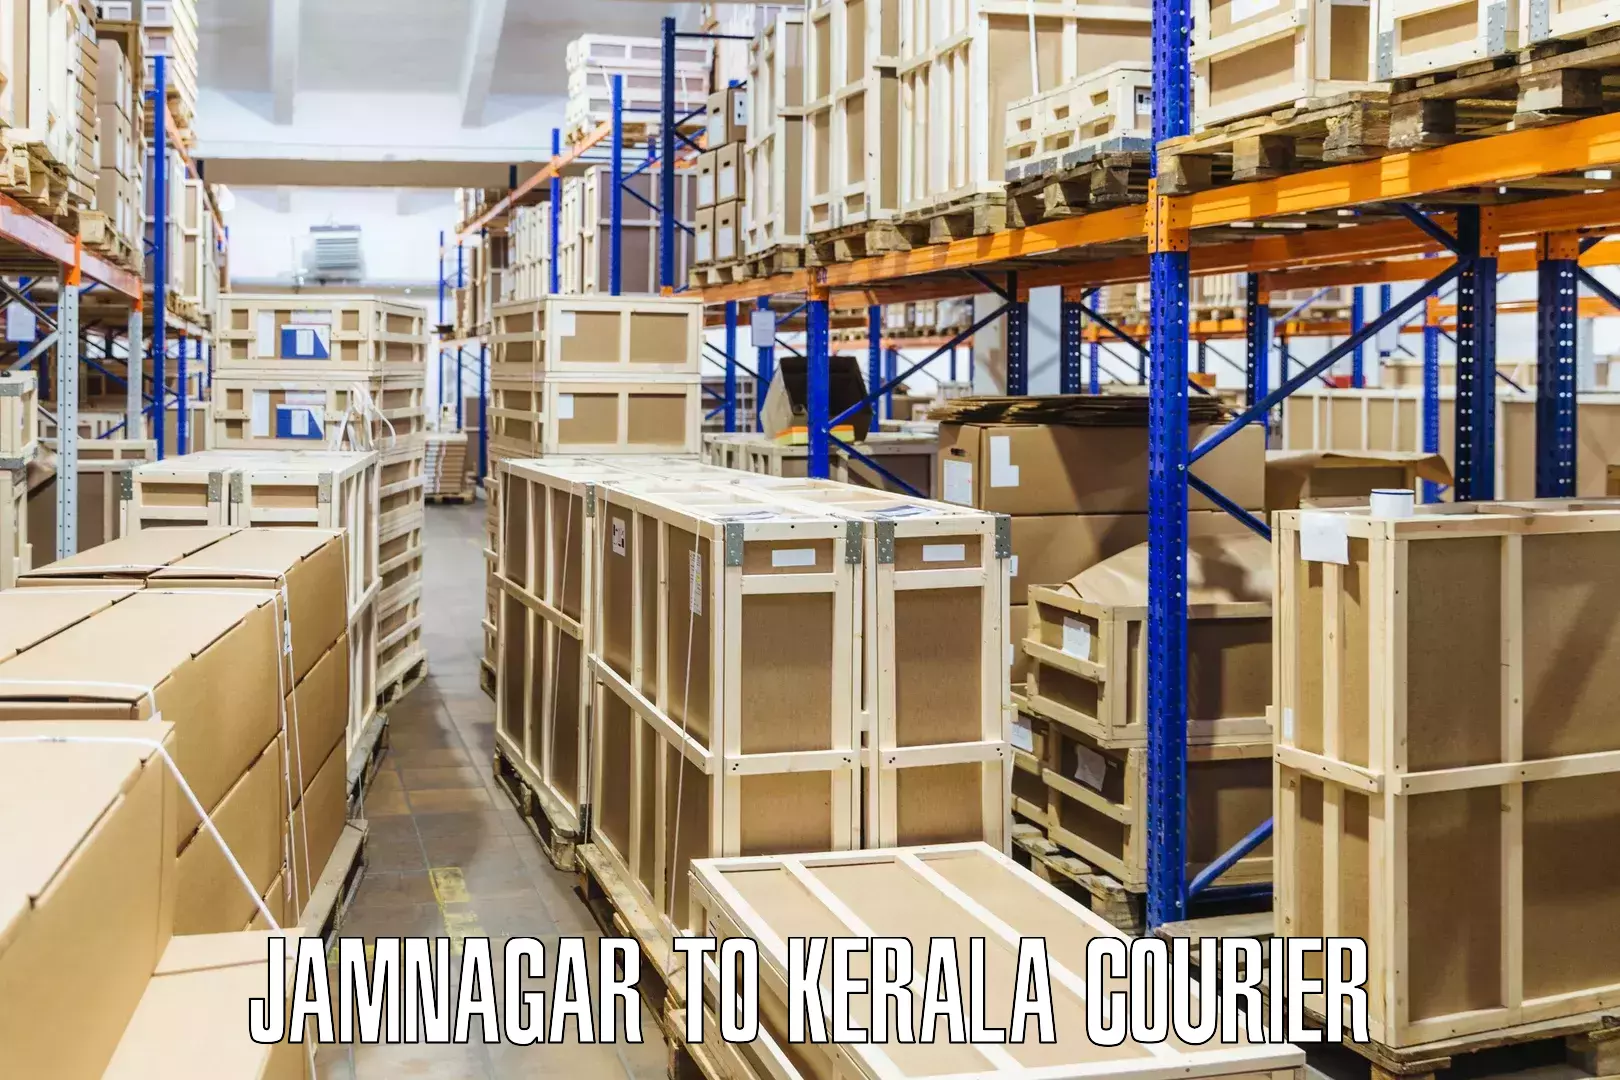 Premium courier services Jamnagar to Parippally